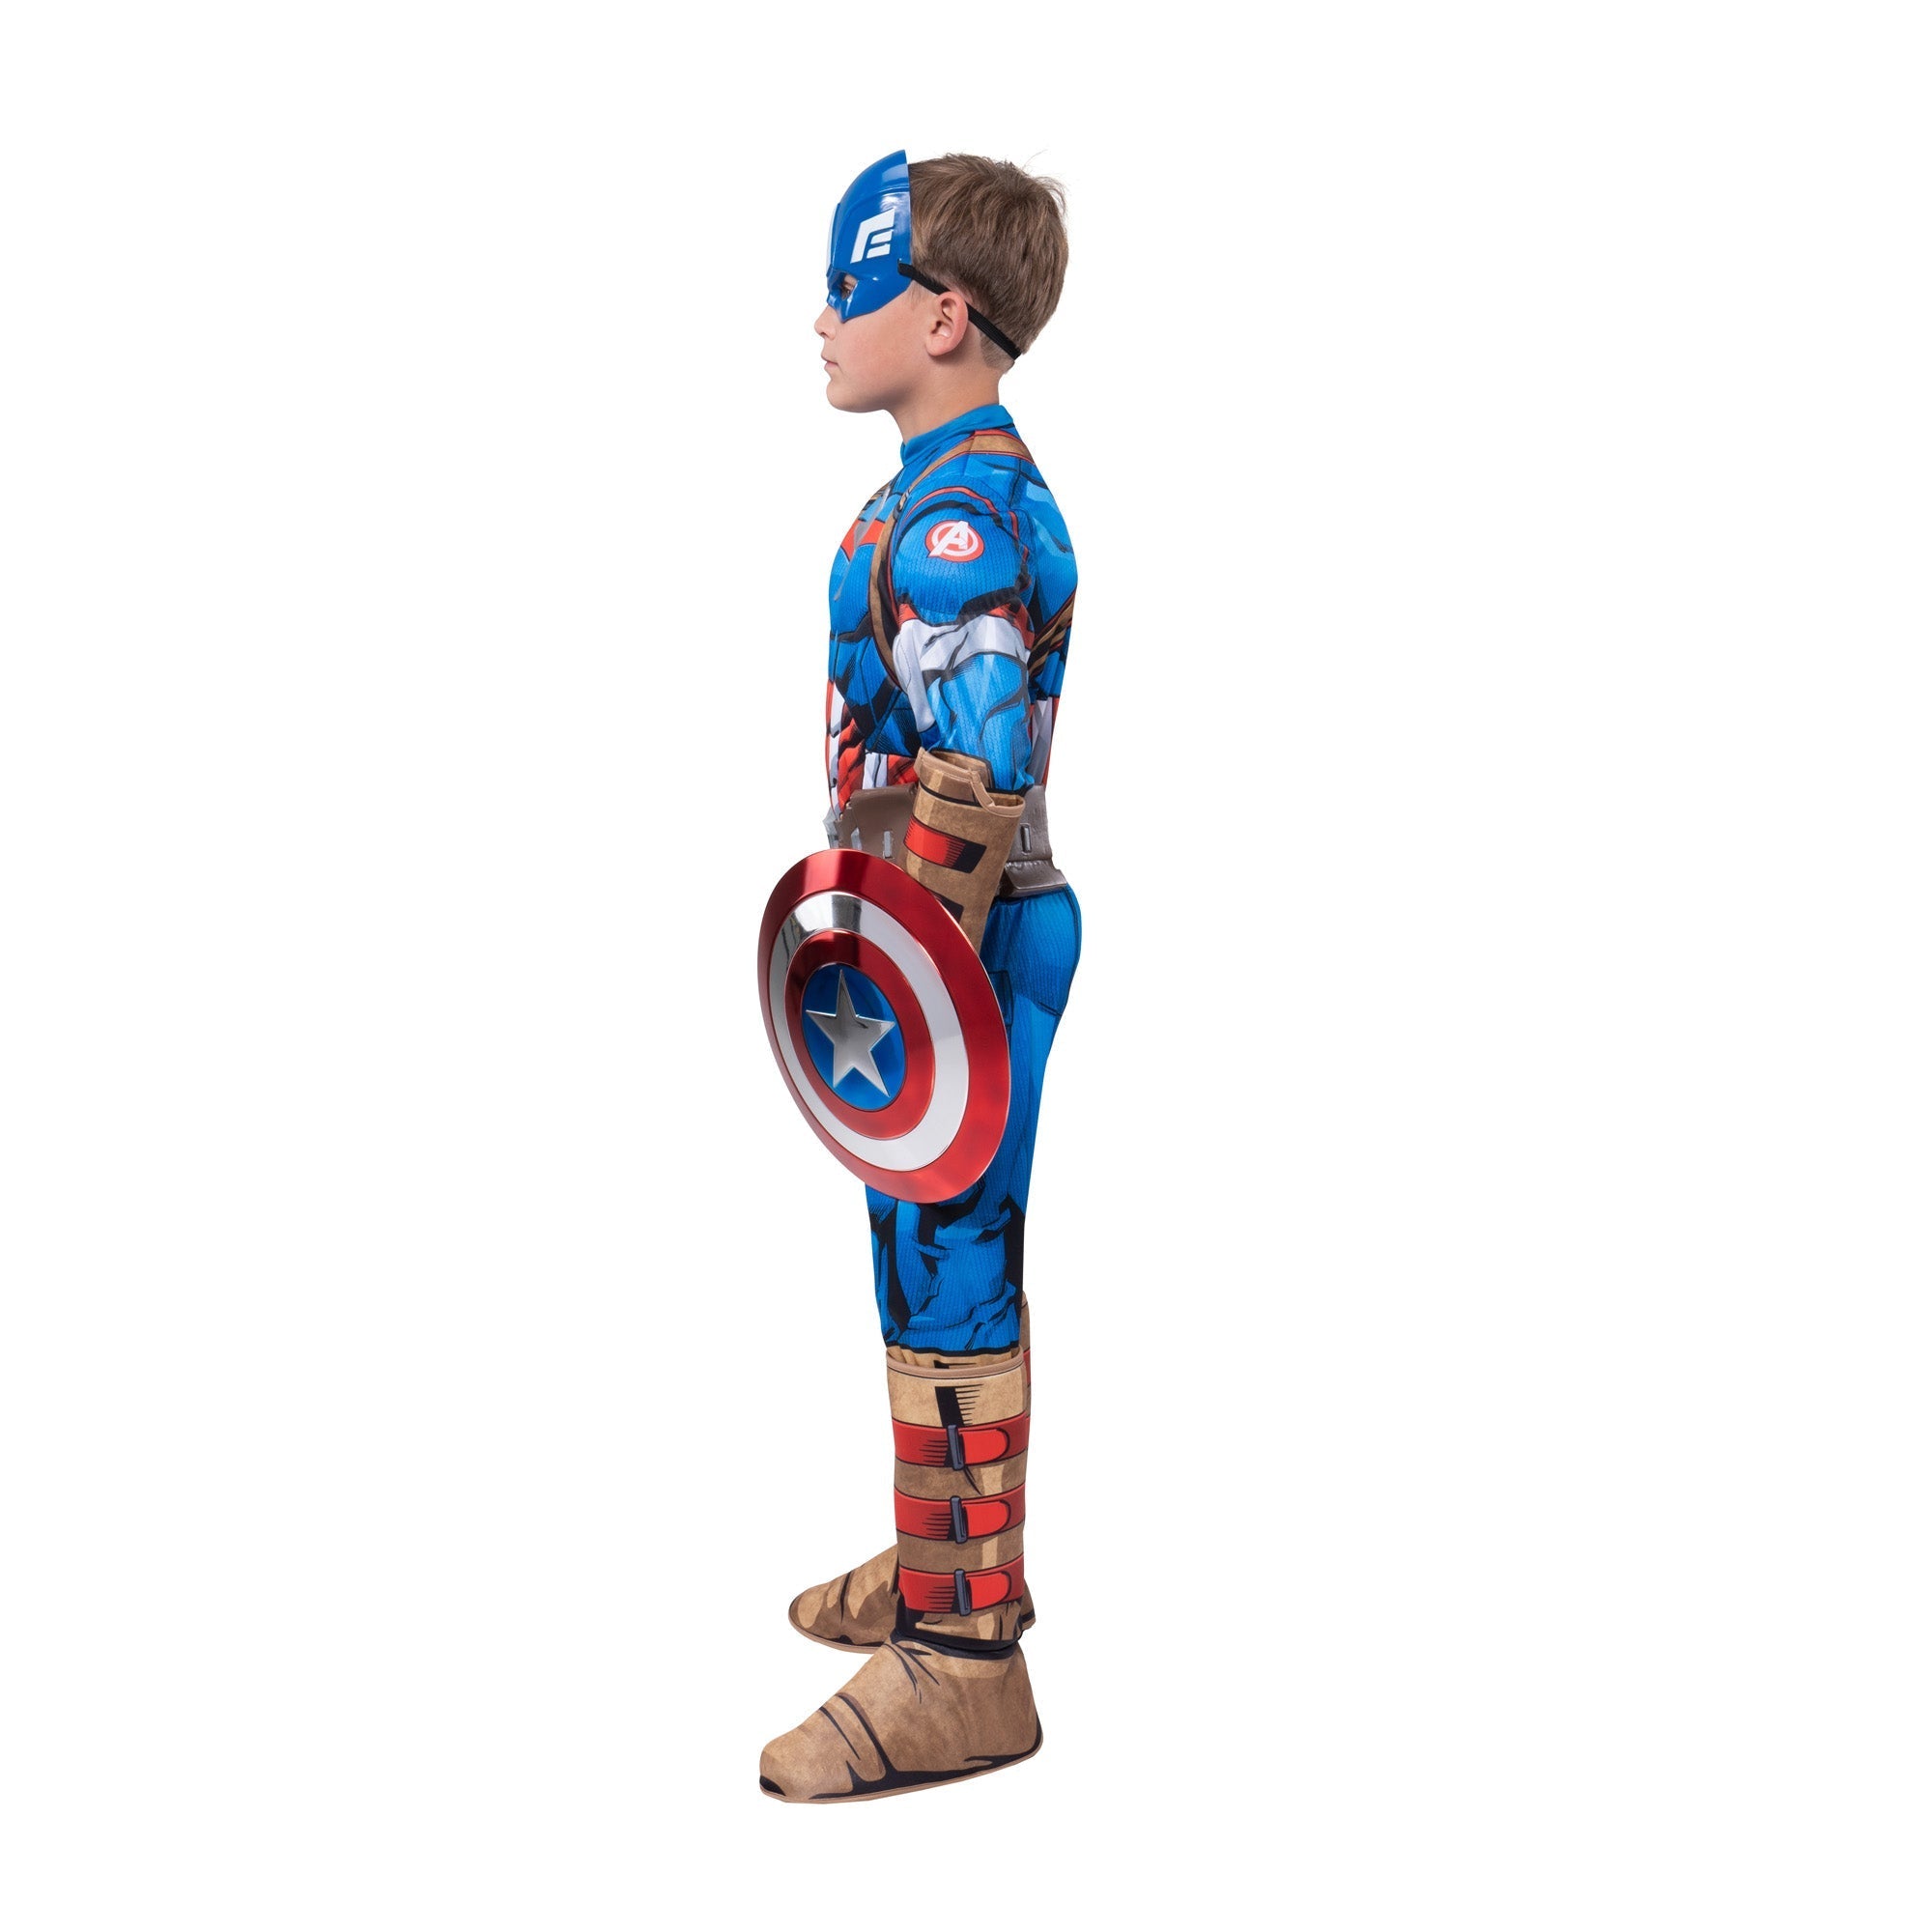 Déguisement Captain America Avengers: Endgame pour un enfant